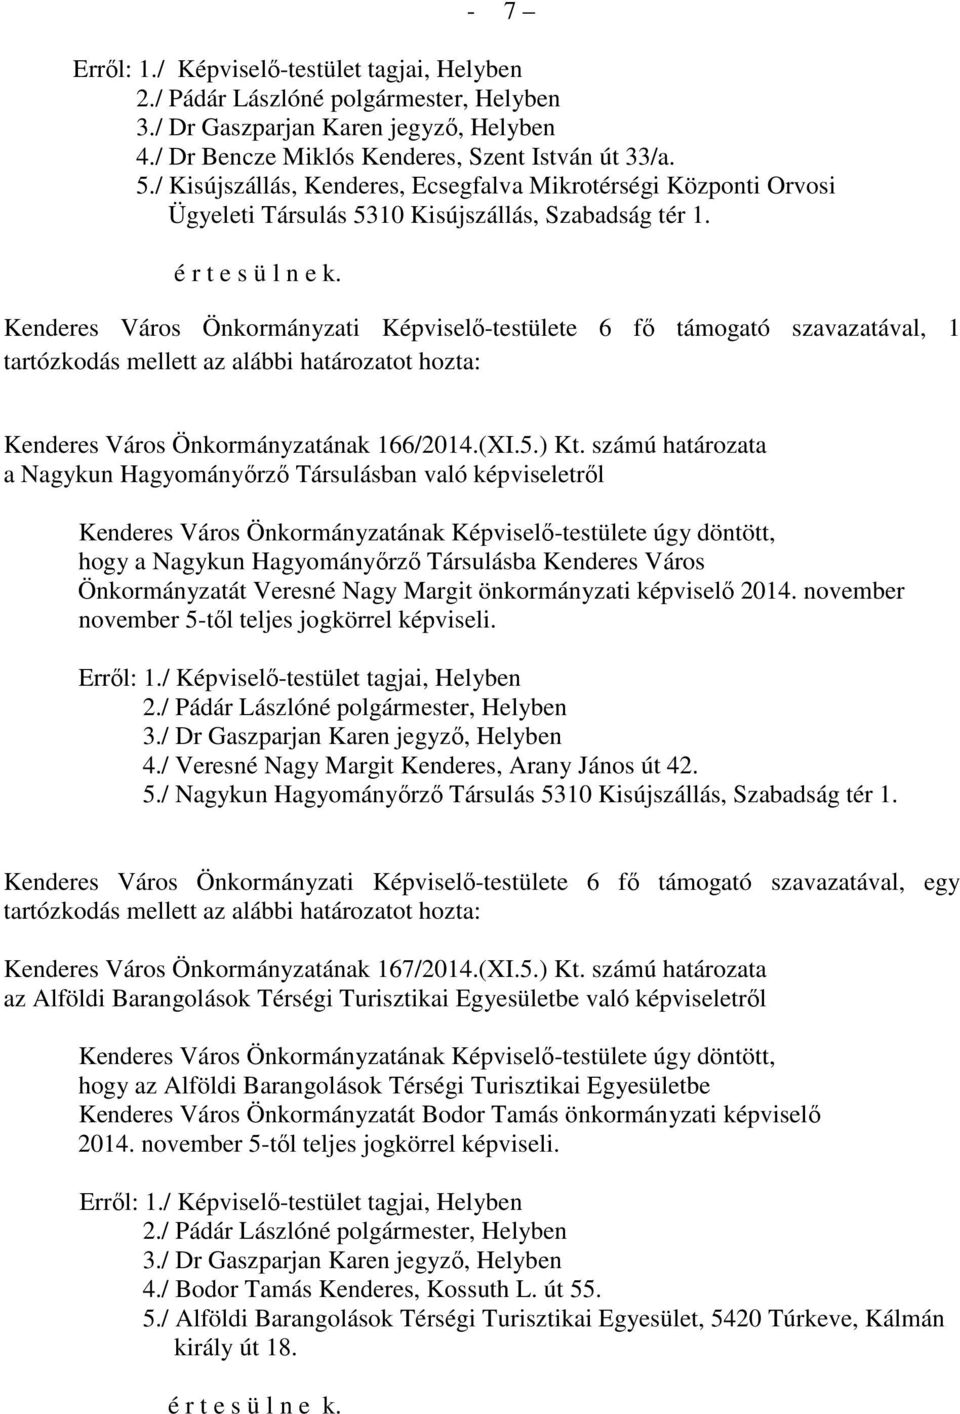 Kenderes Város Önkormányzati Képviselő-testülete 6 fő támogató szavazatával, 1 tartózkodás mellett az alábbi határozatot hozta: Kenderes Város Önkormányzatának 166/2014.(XI.5.) Kt.